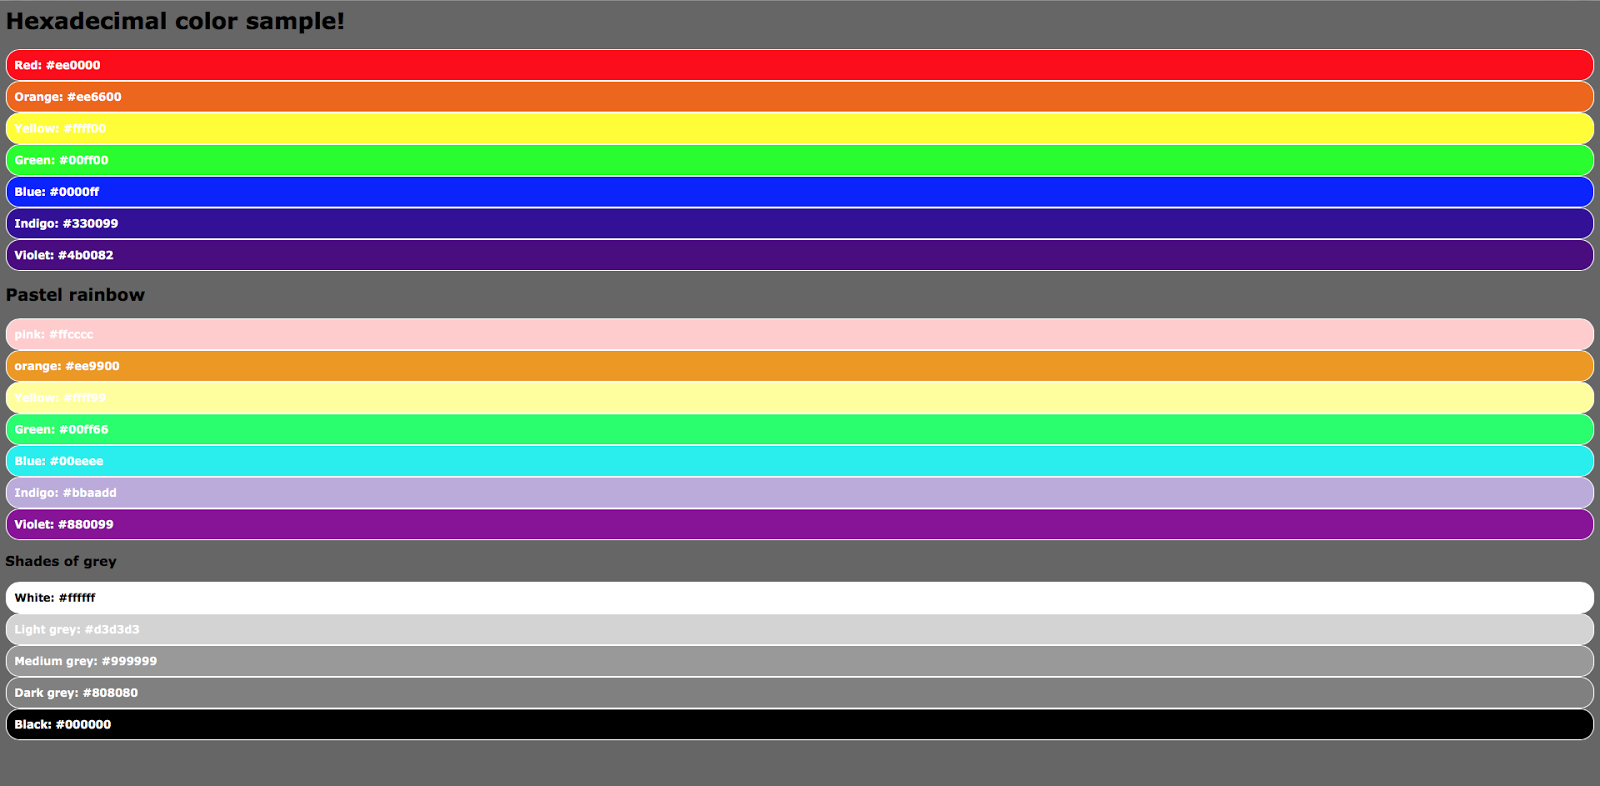 Читы на радугу. Код Радужного цвета. Коды цветов радуги. Радужная палитра с кодами. RGB коды цветов радуги.